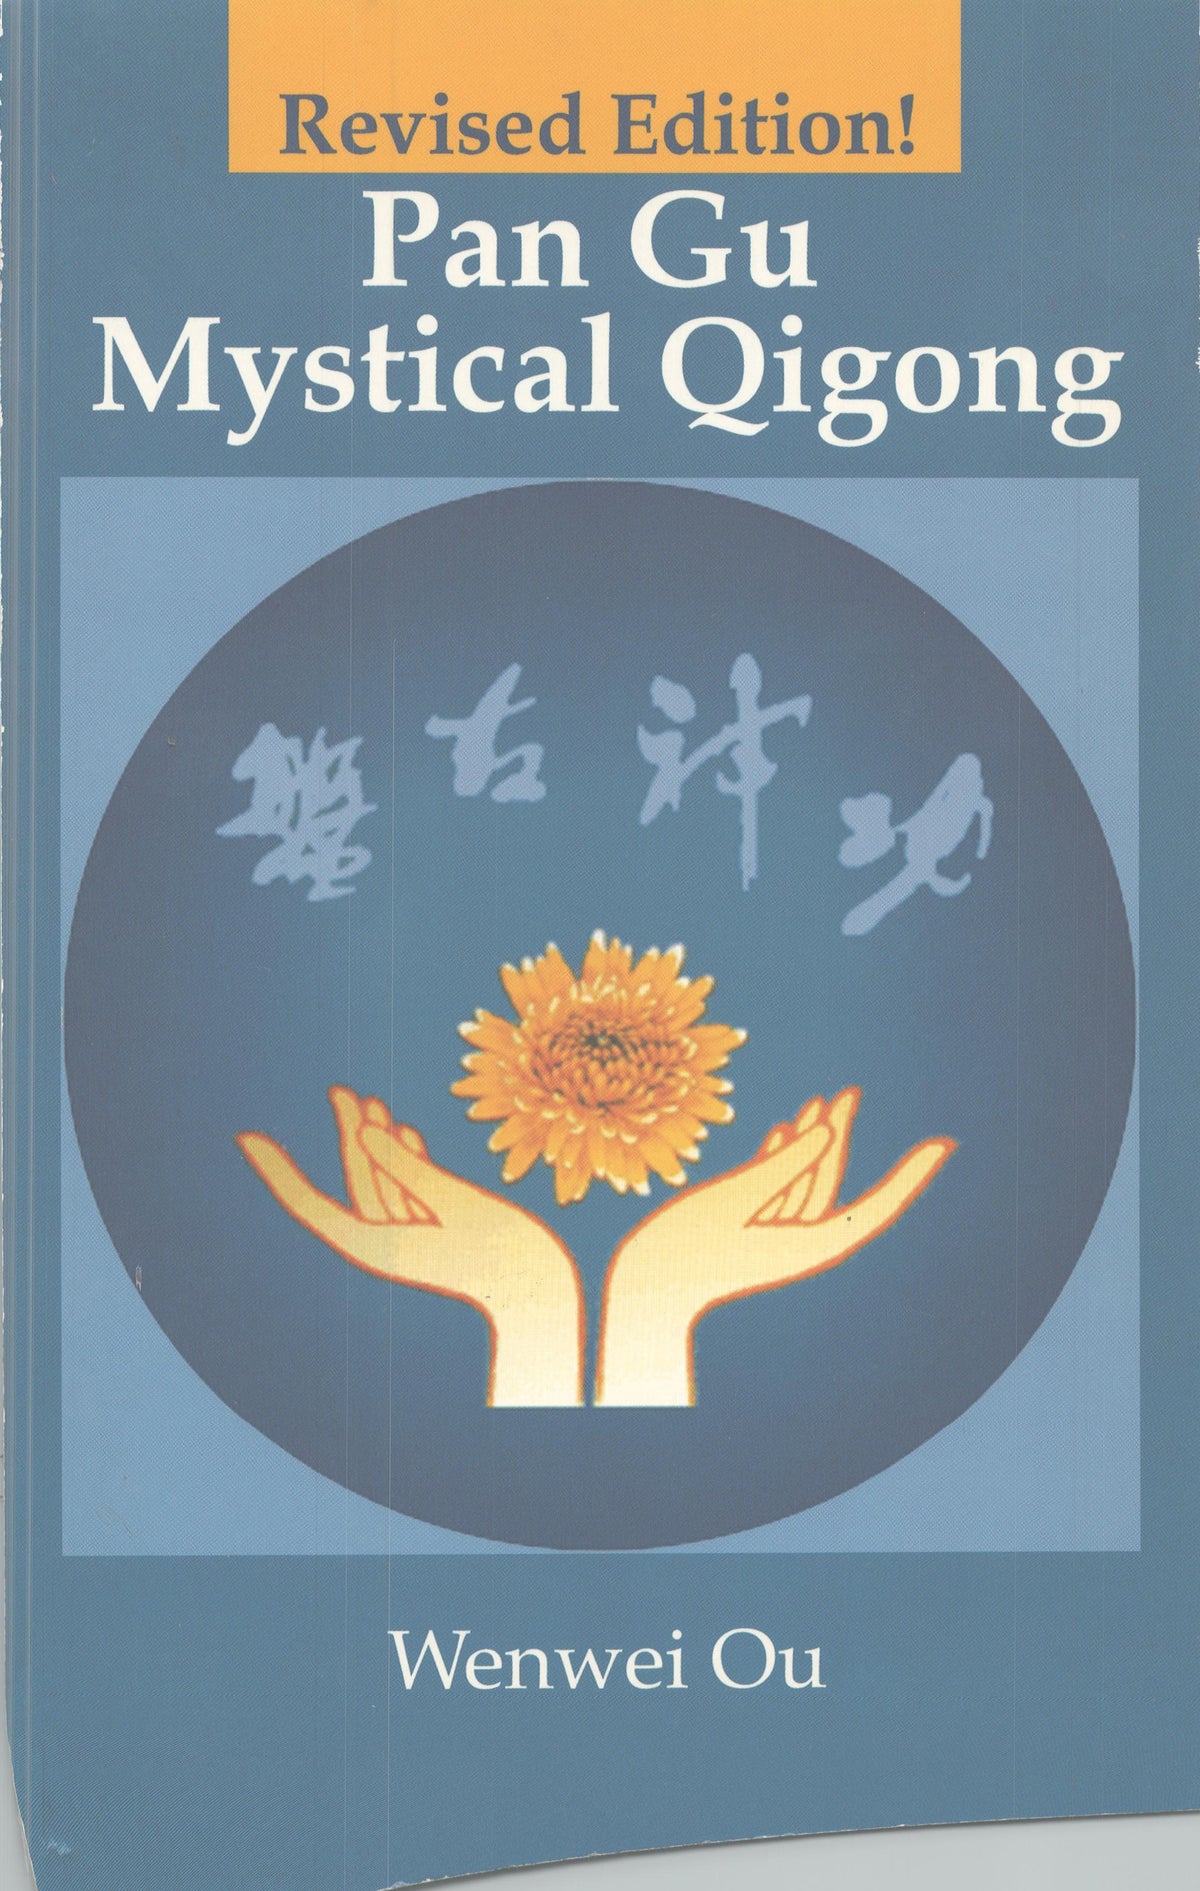 Pan Gu Mystical Qigong Book - Wen Wei Ou